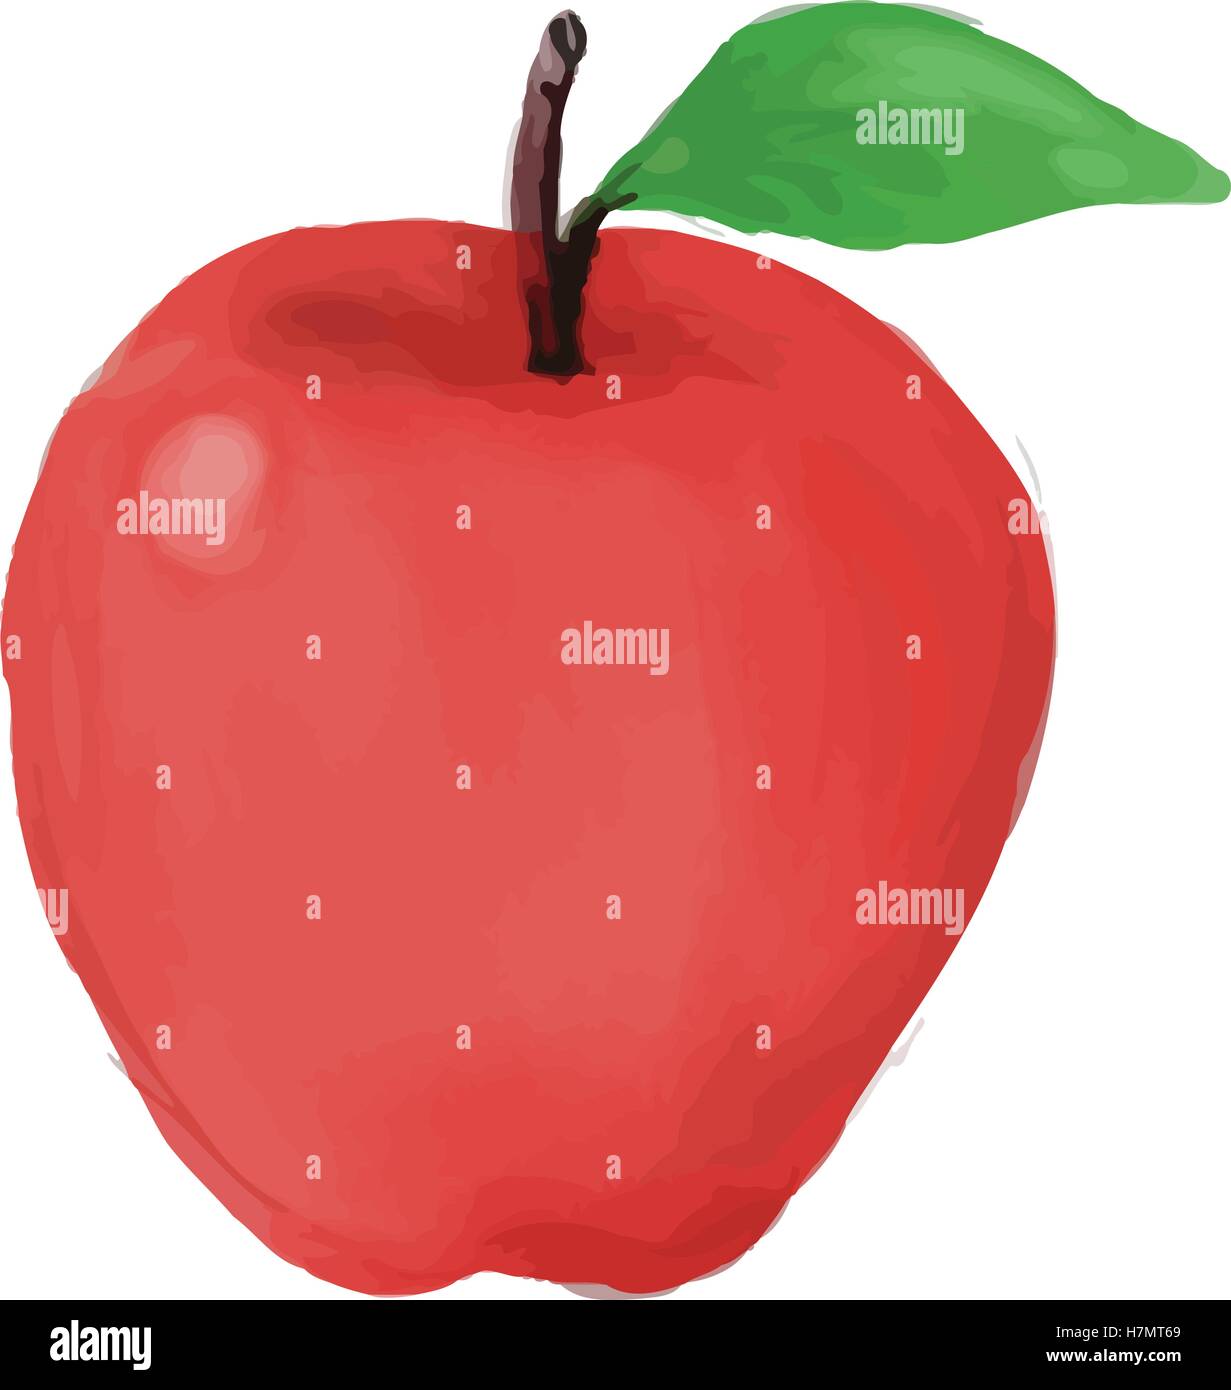 Aquarell-Stil Abbildung eines roten Apfels mit Blatt von vorne am isolierten weißen Hintergrund betrachtet. Stock Vektor